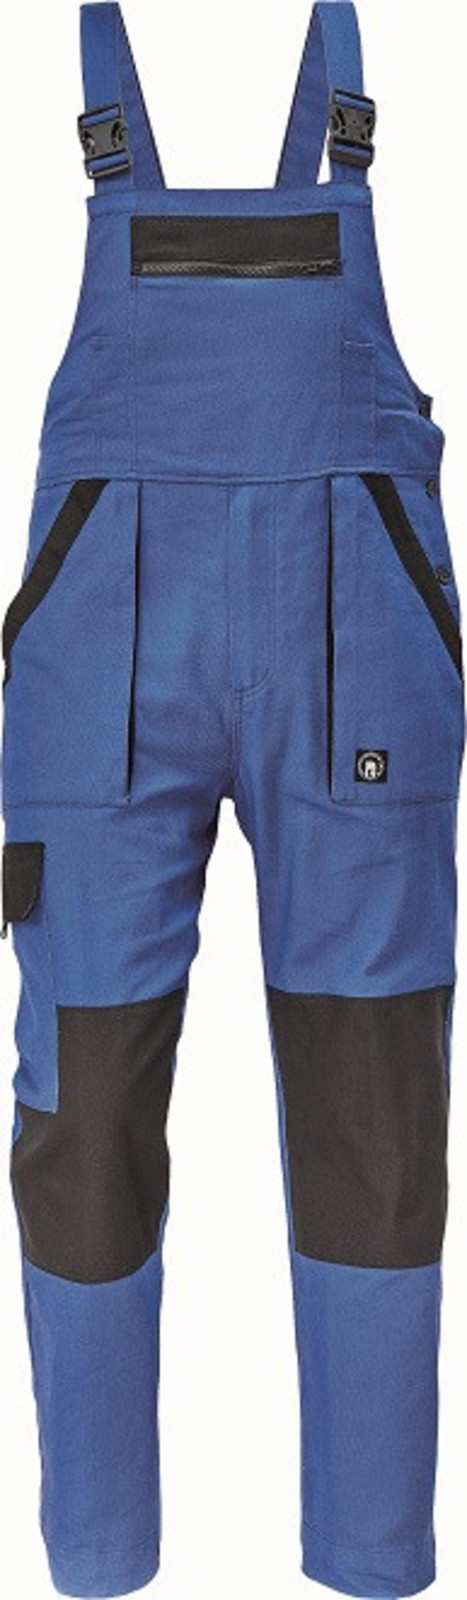 Bavlnené montérky na traky Cerva Max Neo pánske - veľkosť: 58, farba: modrá